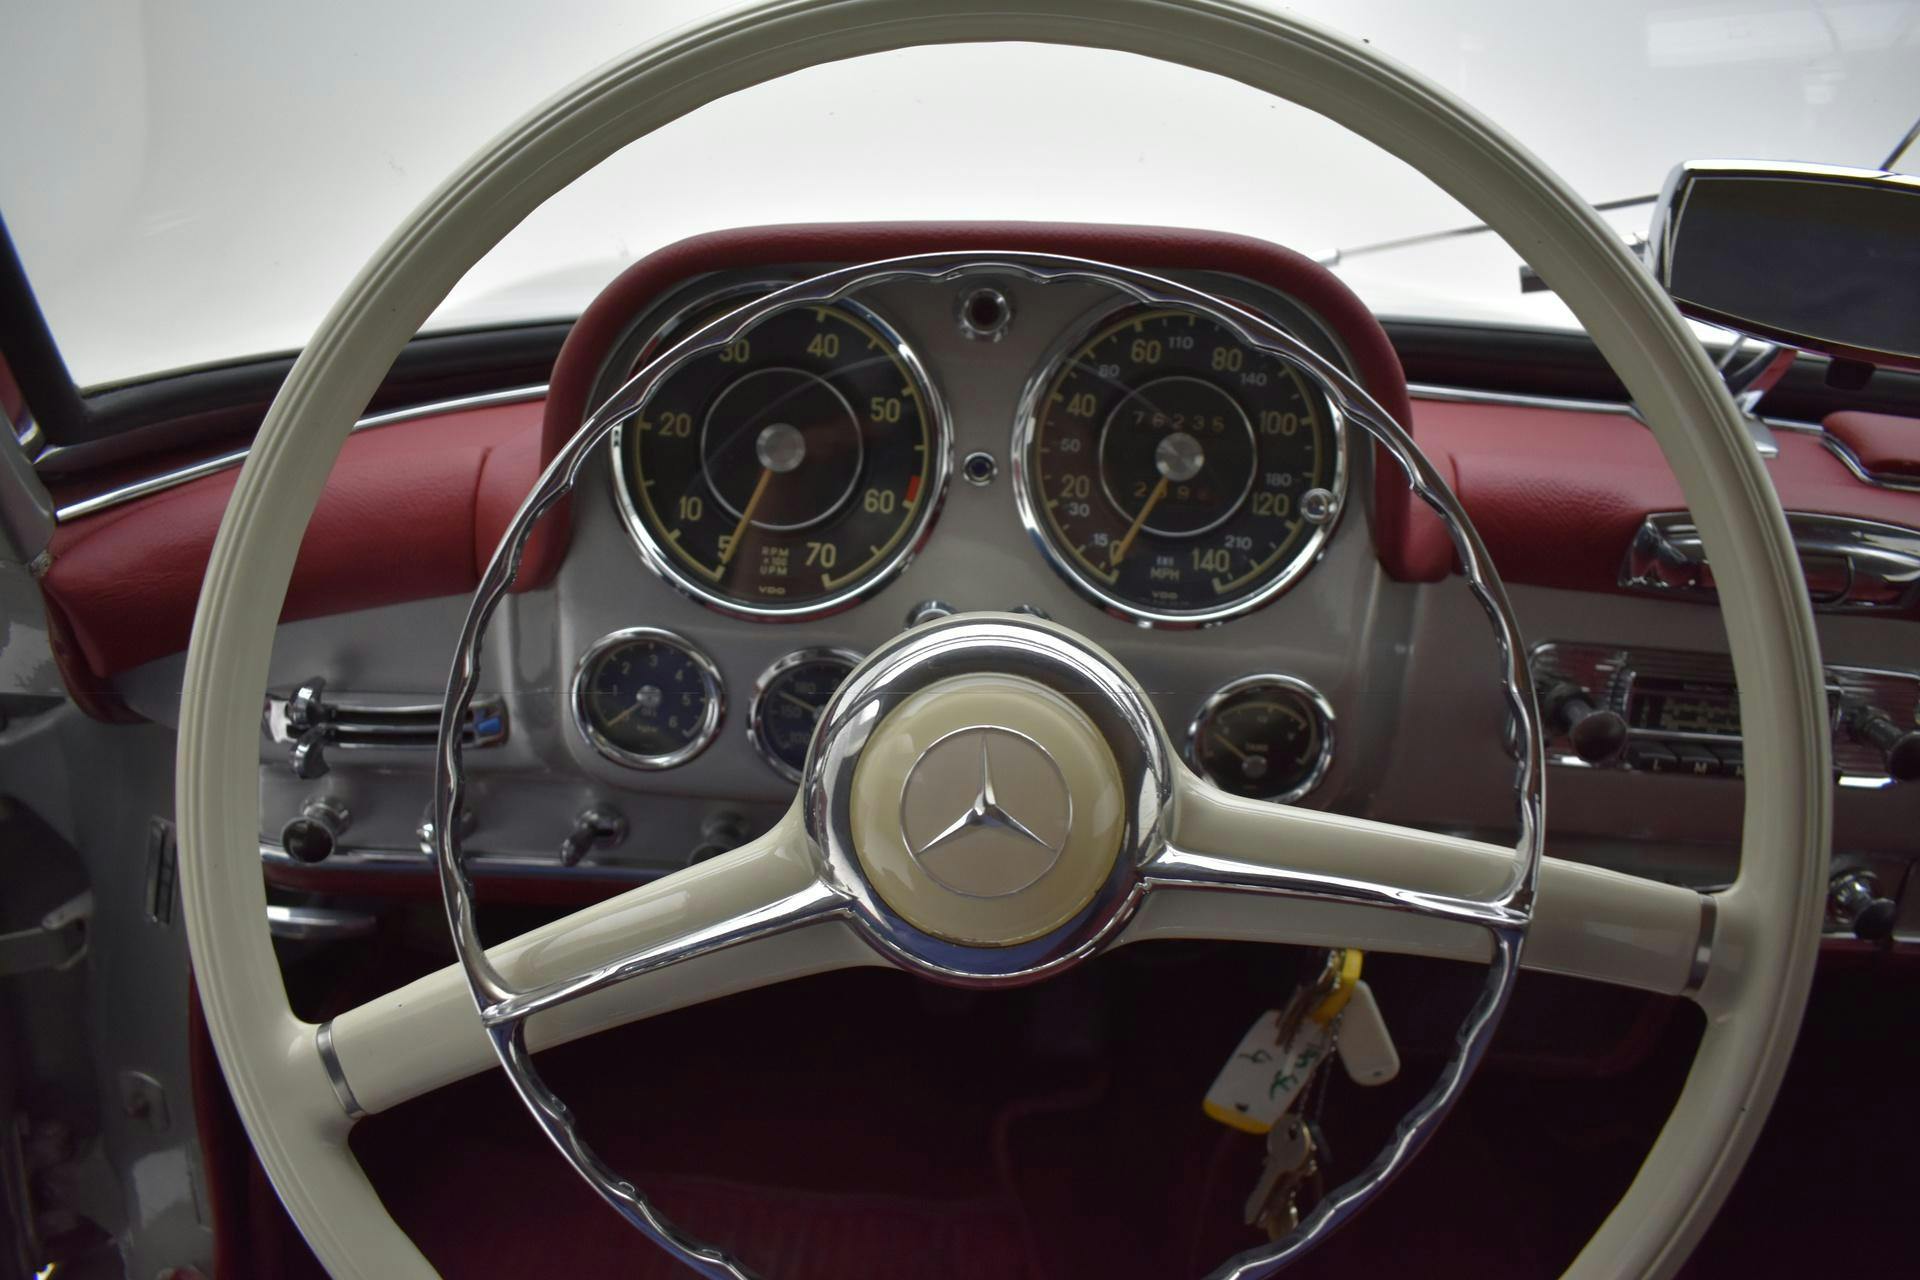 Mercedes-Benz 190 SL Roadster interior steering wheel